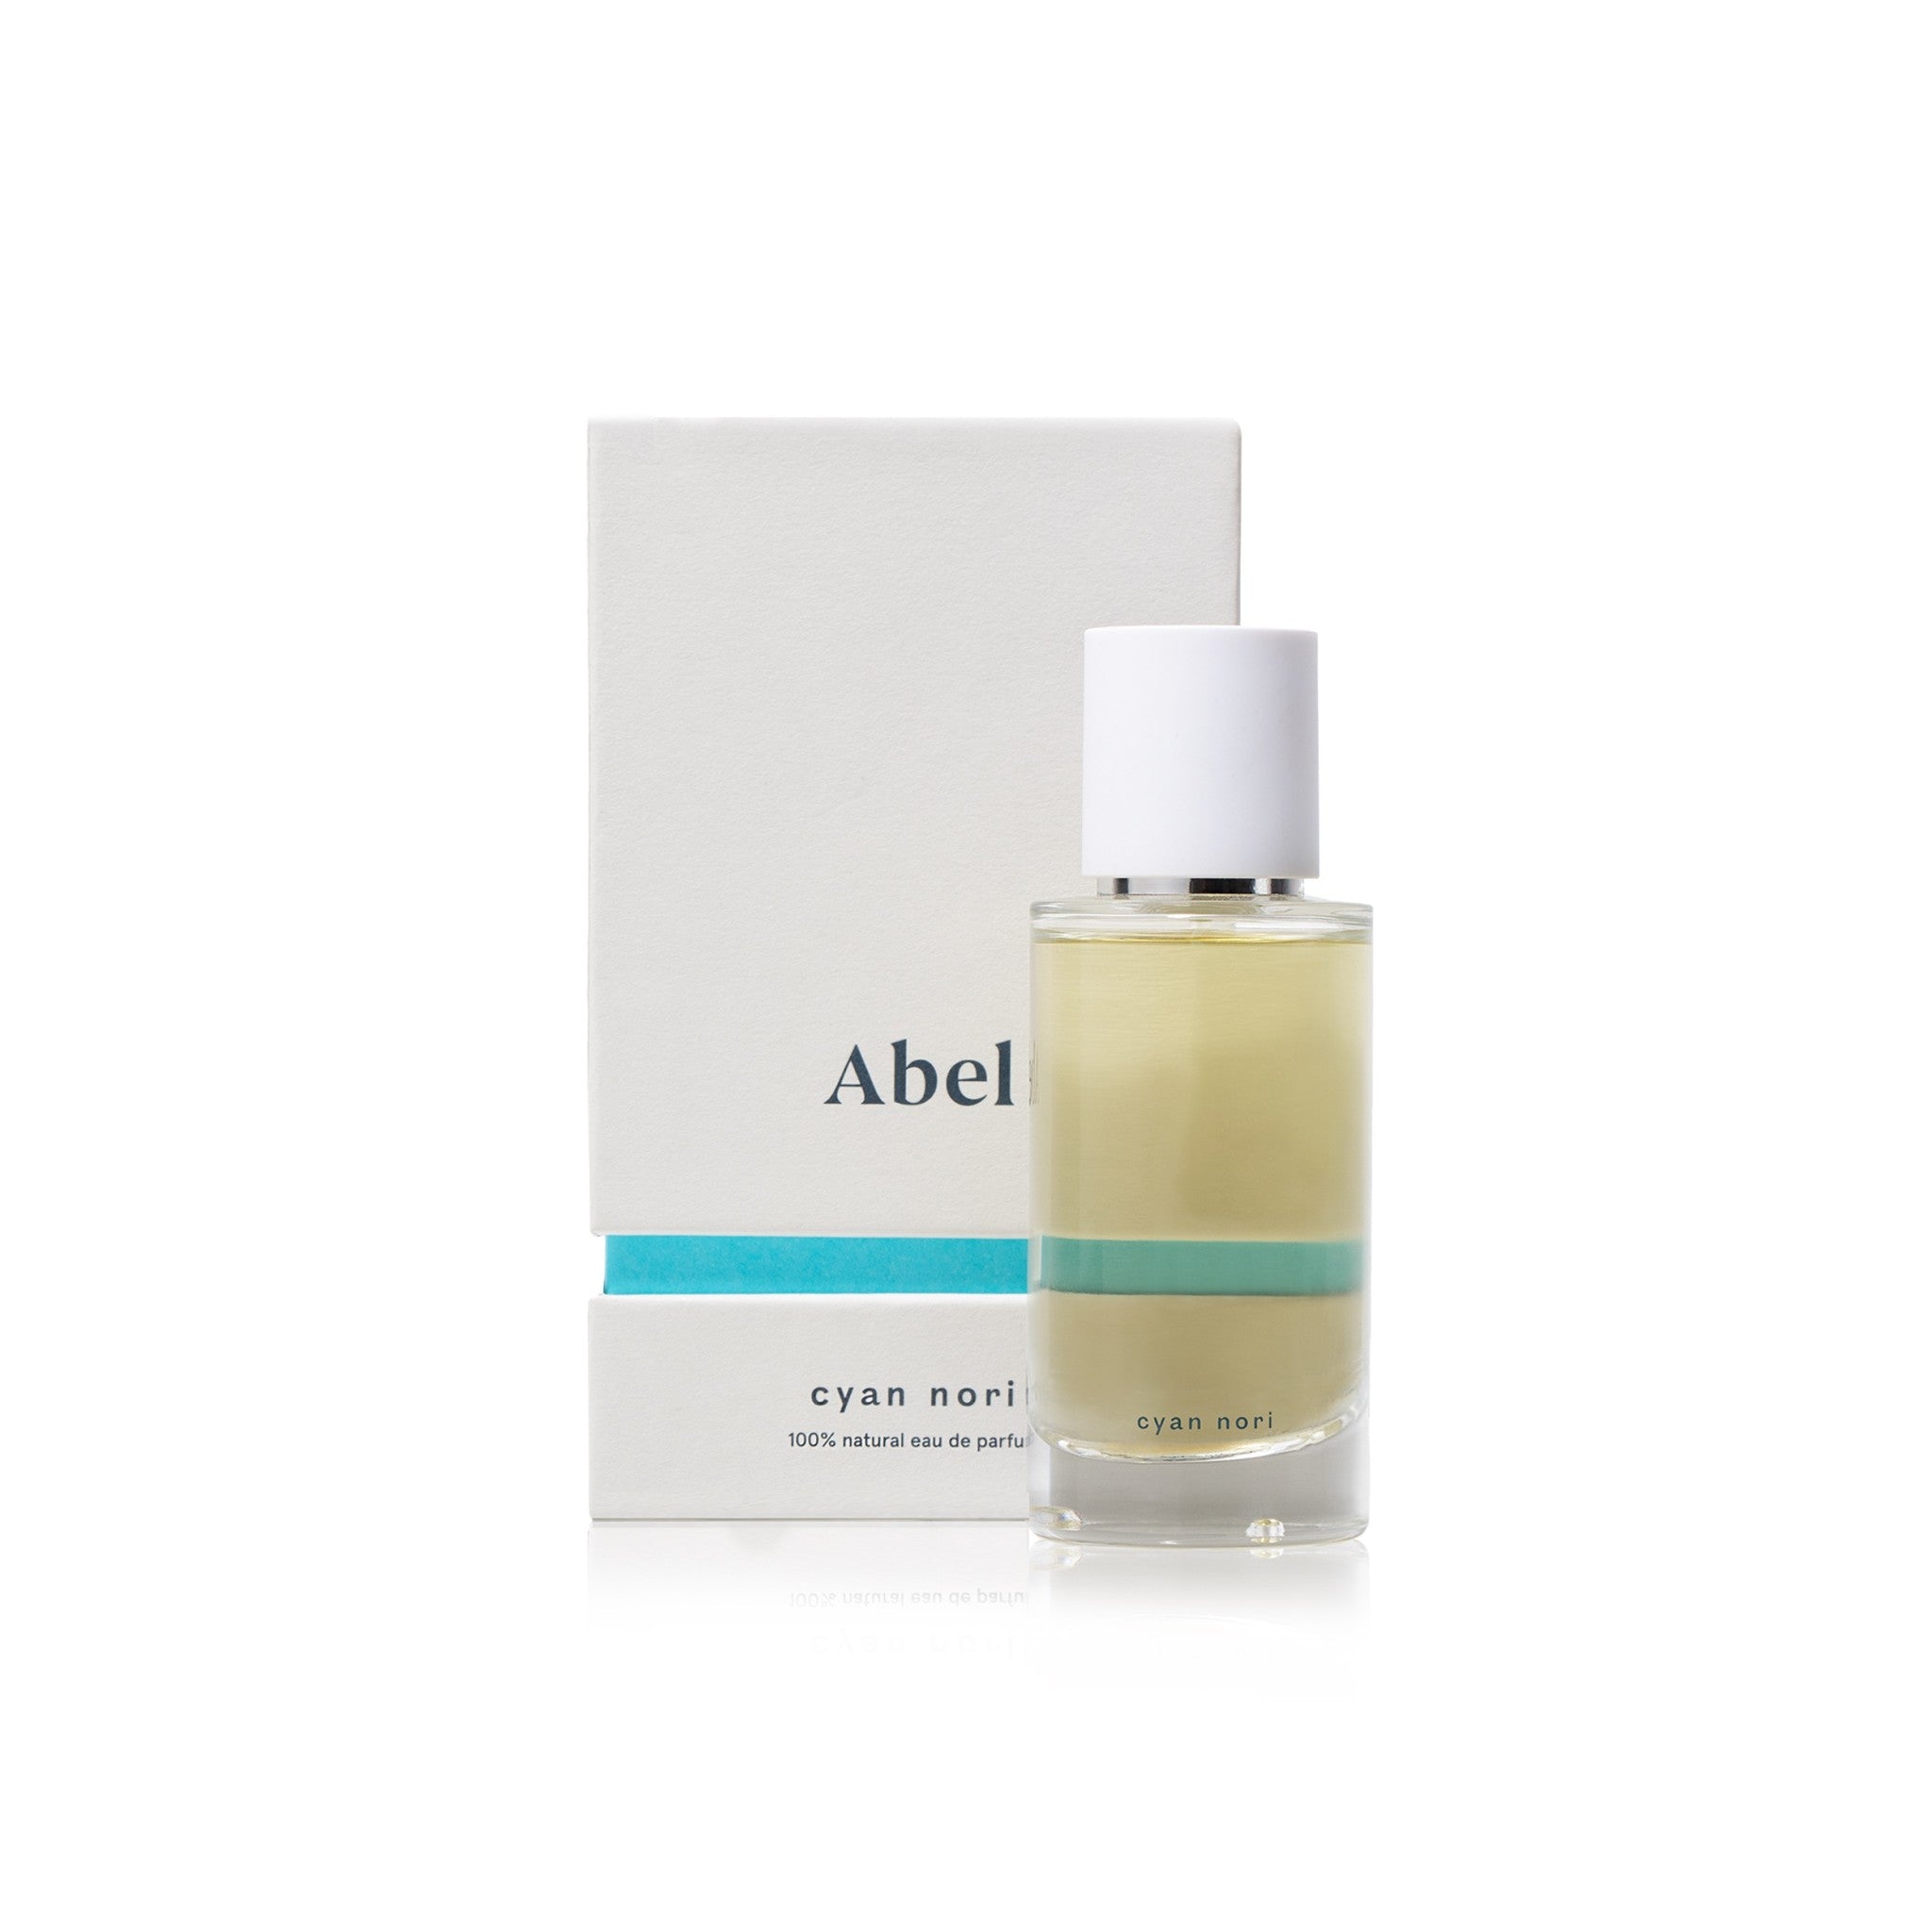 Abel Cyan Nori Eau de Parfum Size variant: 1.7 oz main image.